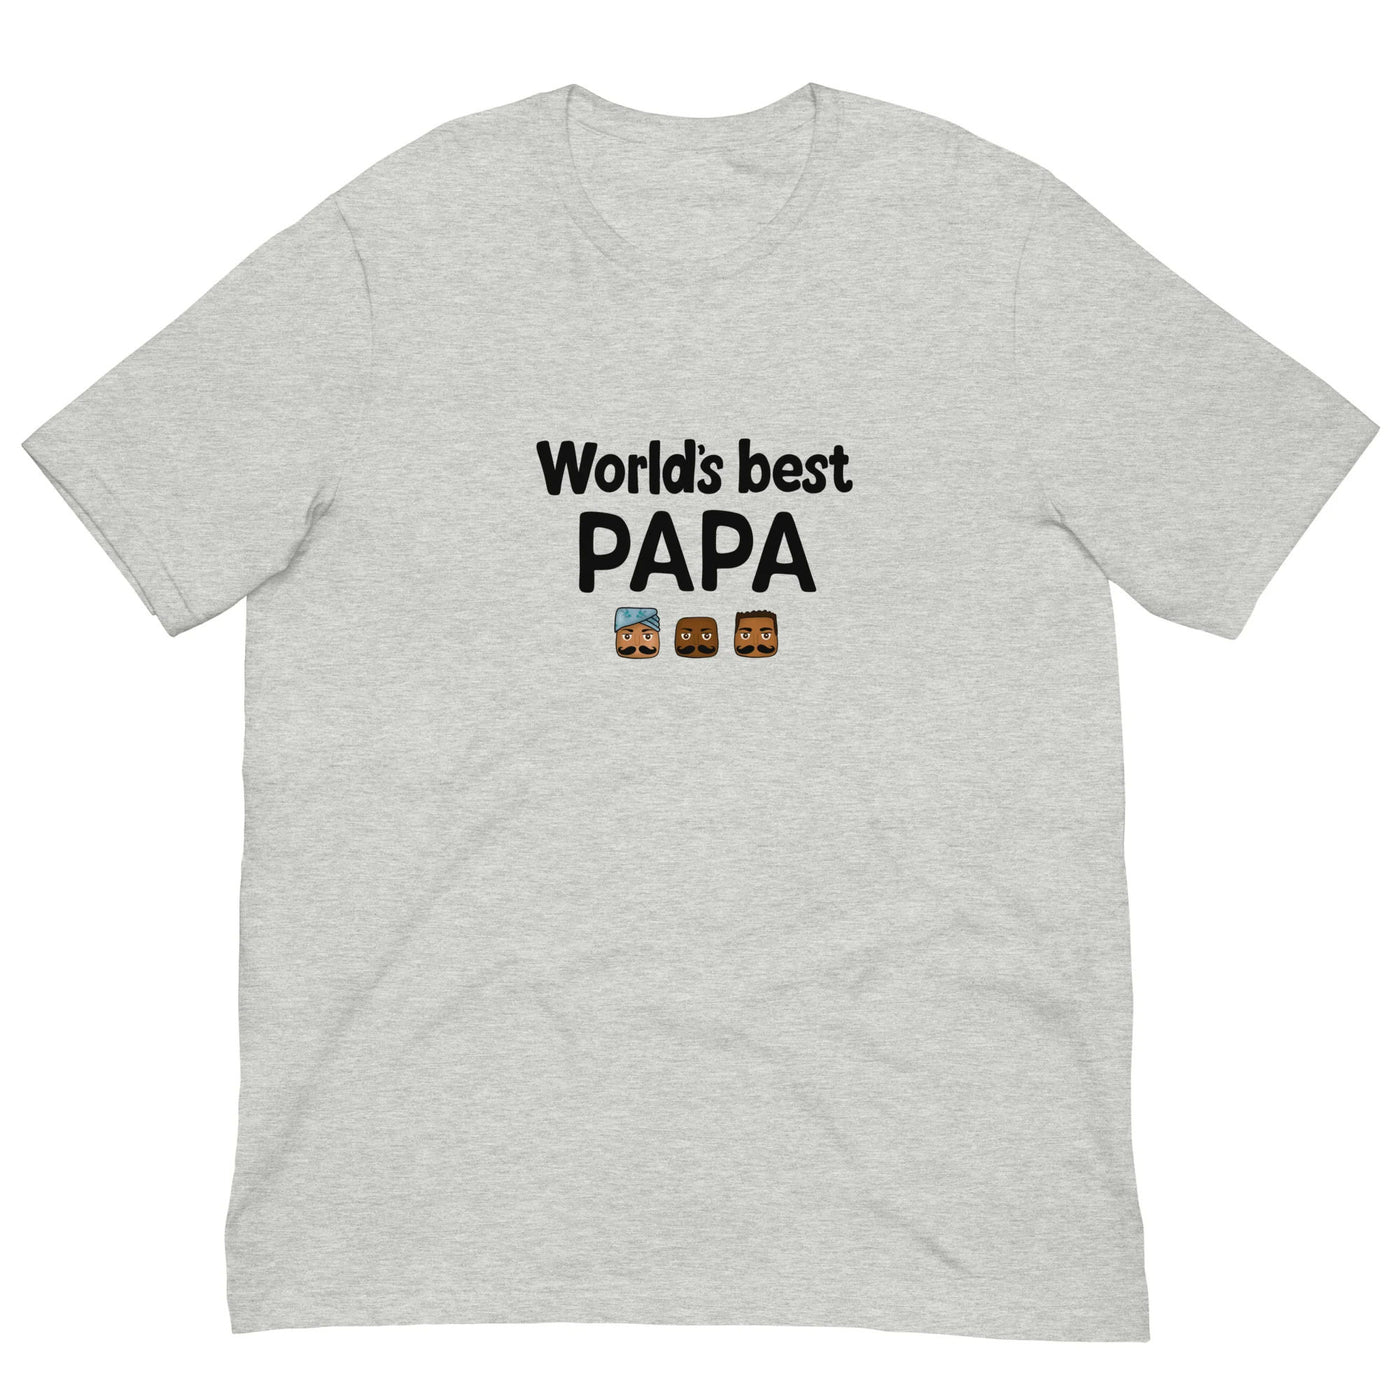 World's Best Papa T-shirt